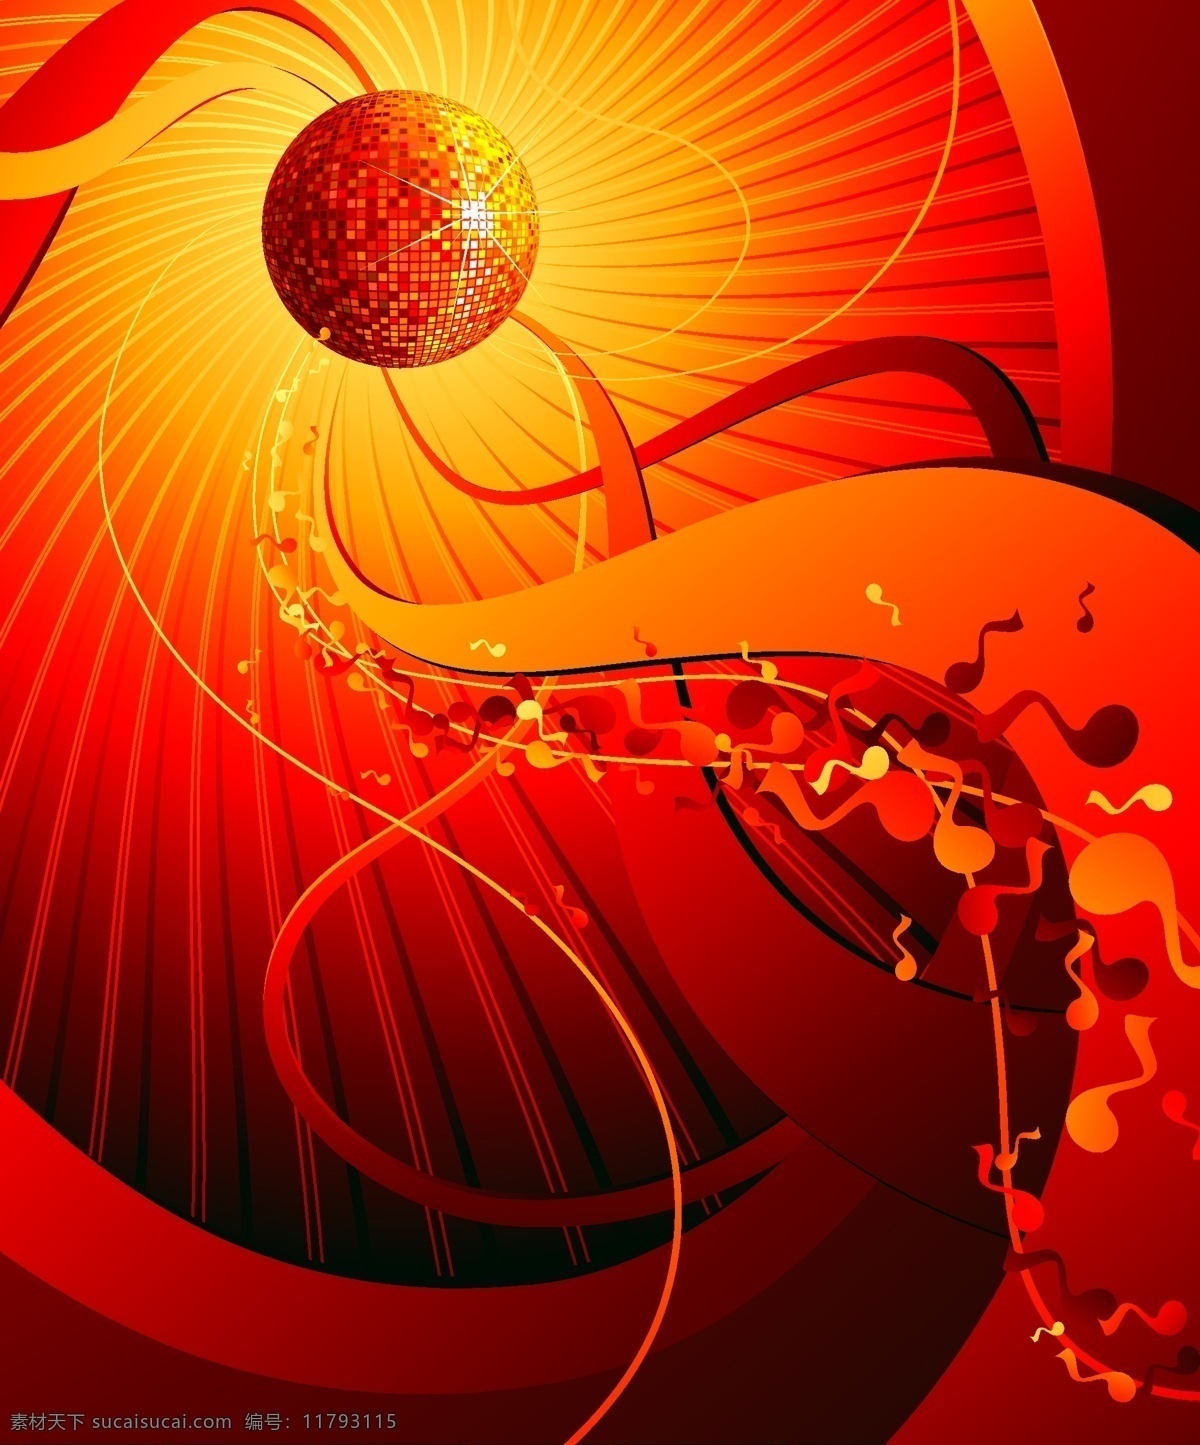 潮流 disco 音乐 元素 ai格式 动感 放射线 红色 模板 设计稿 矢量素材 水晶球 星光 音乐元素 音符 线条 素材元素 源文件 矢量图